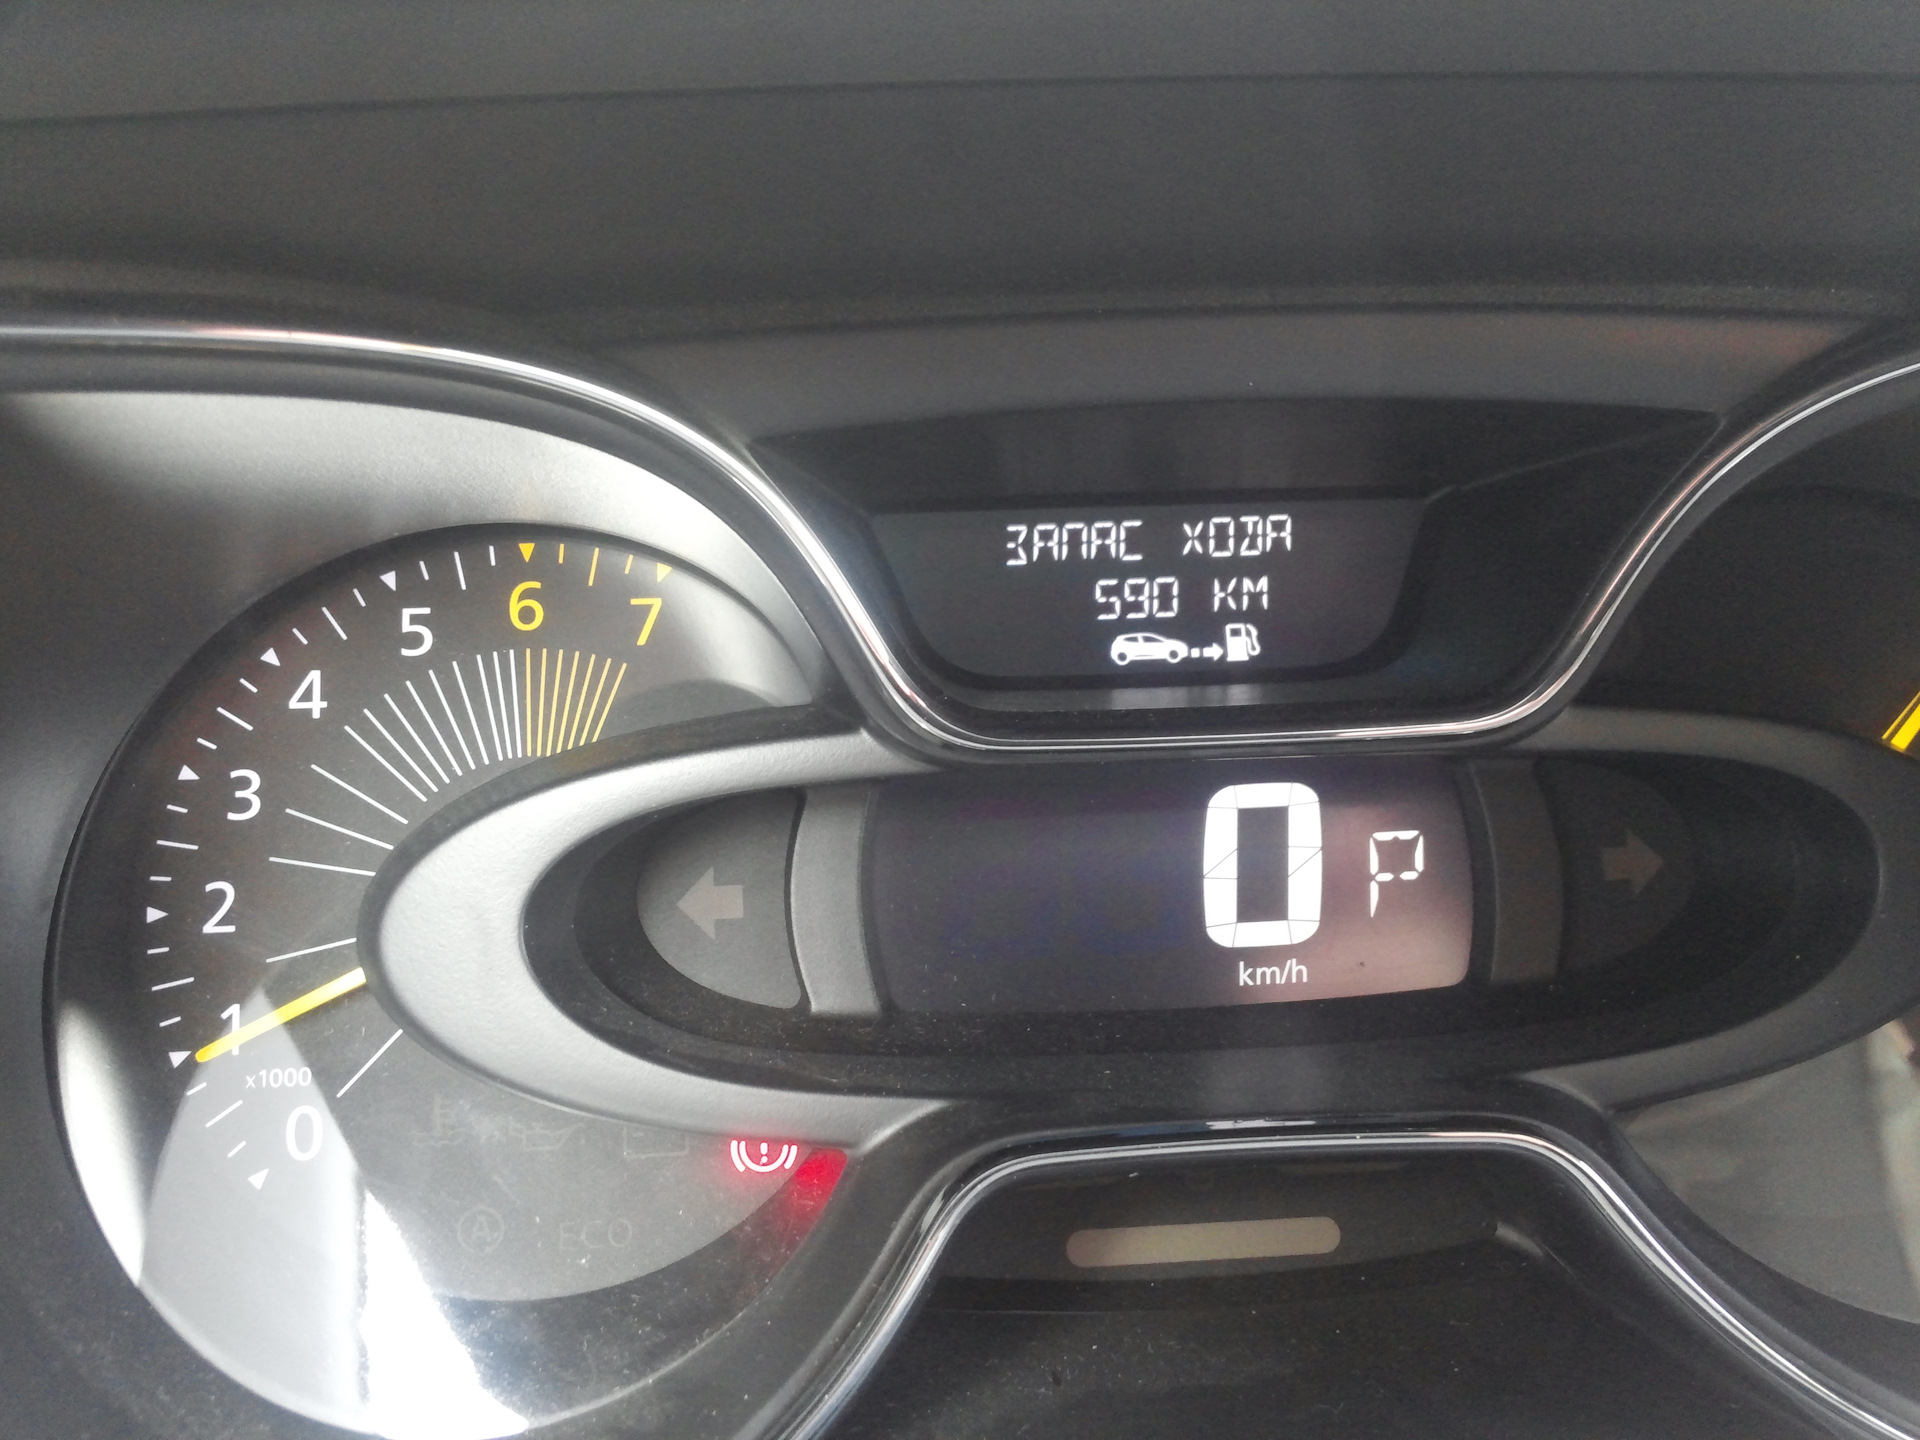 Рено Captur 1.2 управление бортовым компьютером. Рено Каптур 2017 система контроля давления в шинах. Давление в колёсах легкового автомобиля летом Рено Каптур. Ошибка на Рено Каптур 1.2 турбо. Межсервисный интервал рено каптур